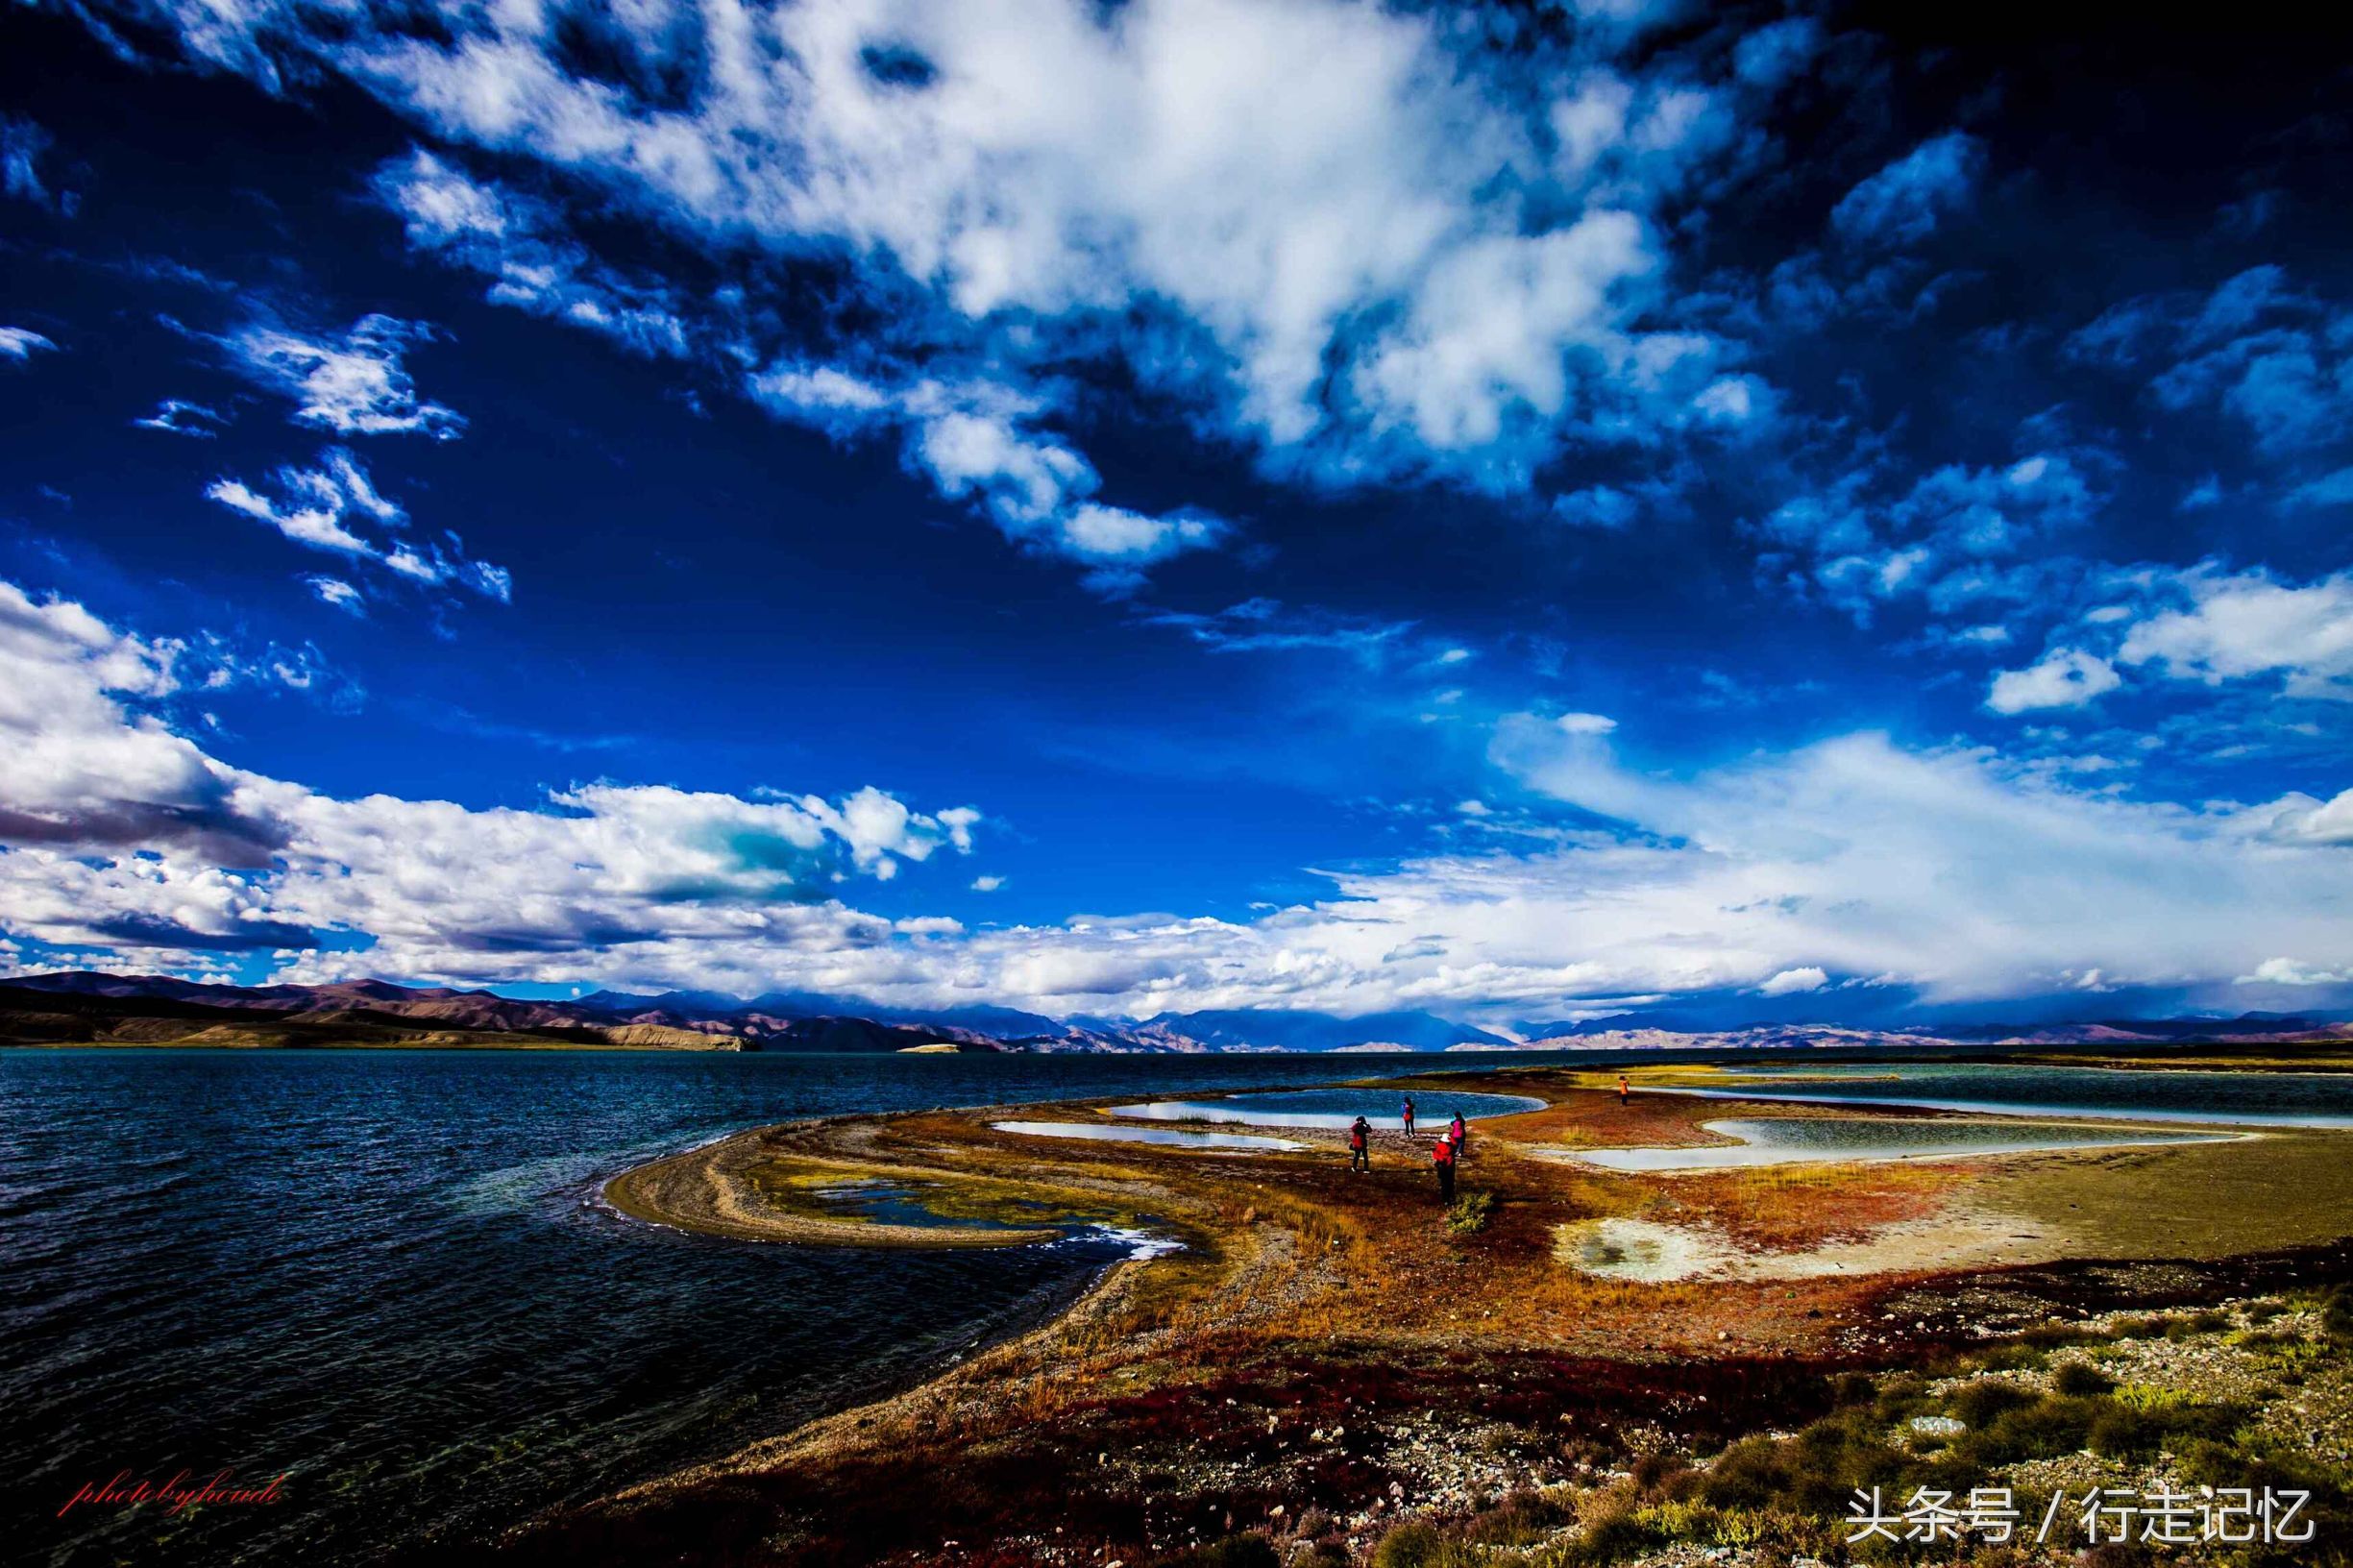 「原创」厚德影像:班公湖--难以企及的秘境冒着极度高反拍摄!_搜狐旅游_搜狐网